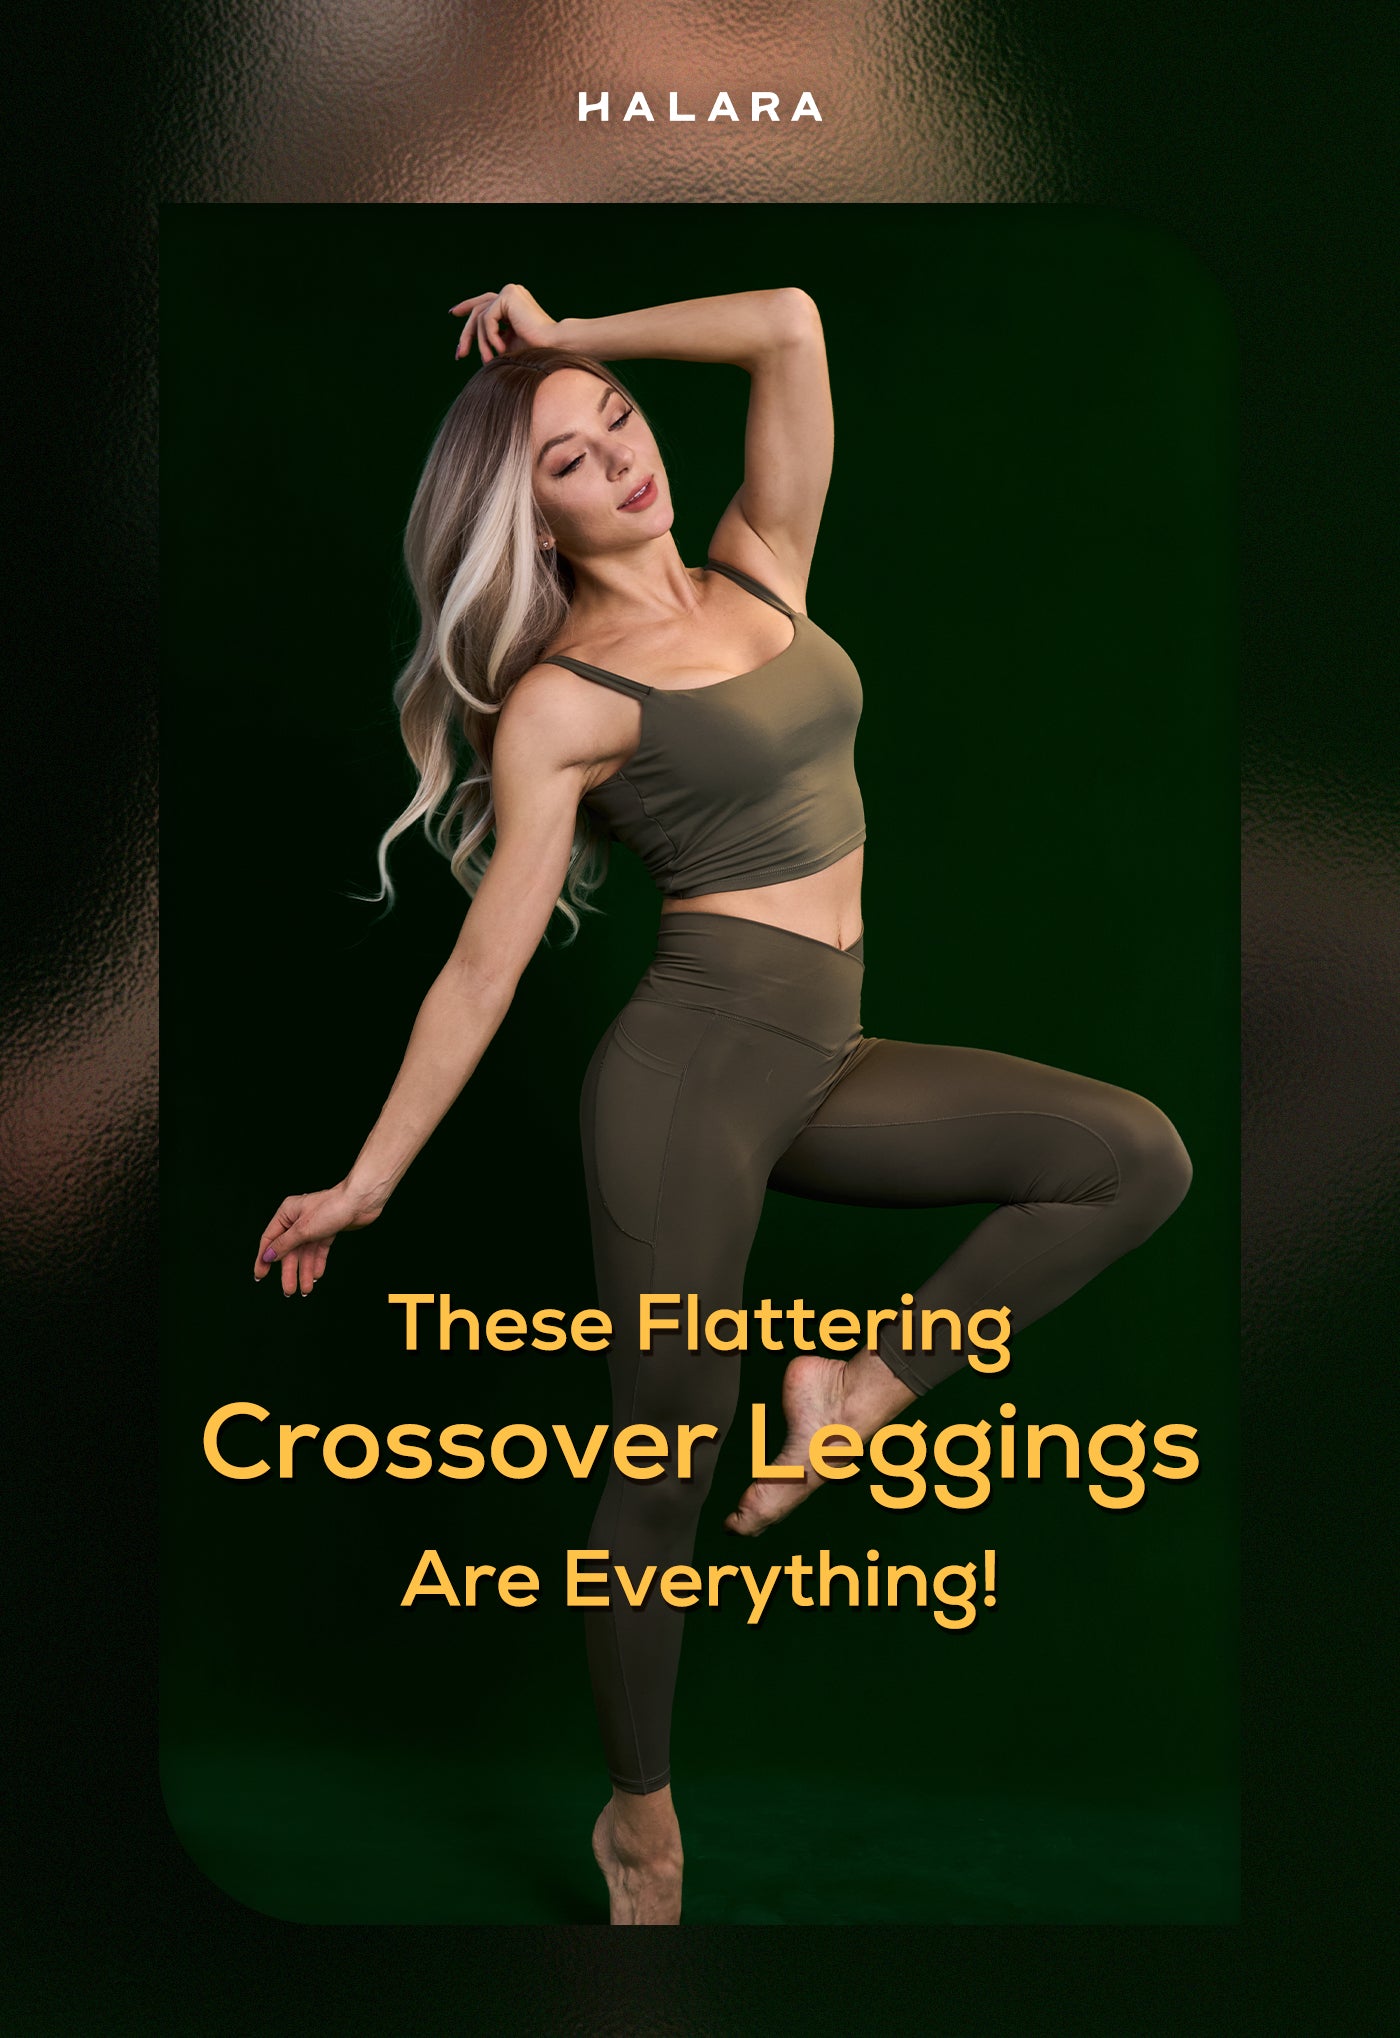 Crossover leggings TikTok advertising